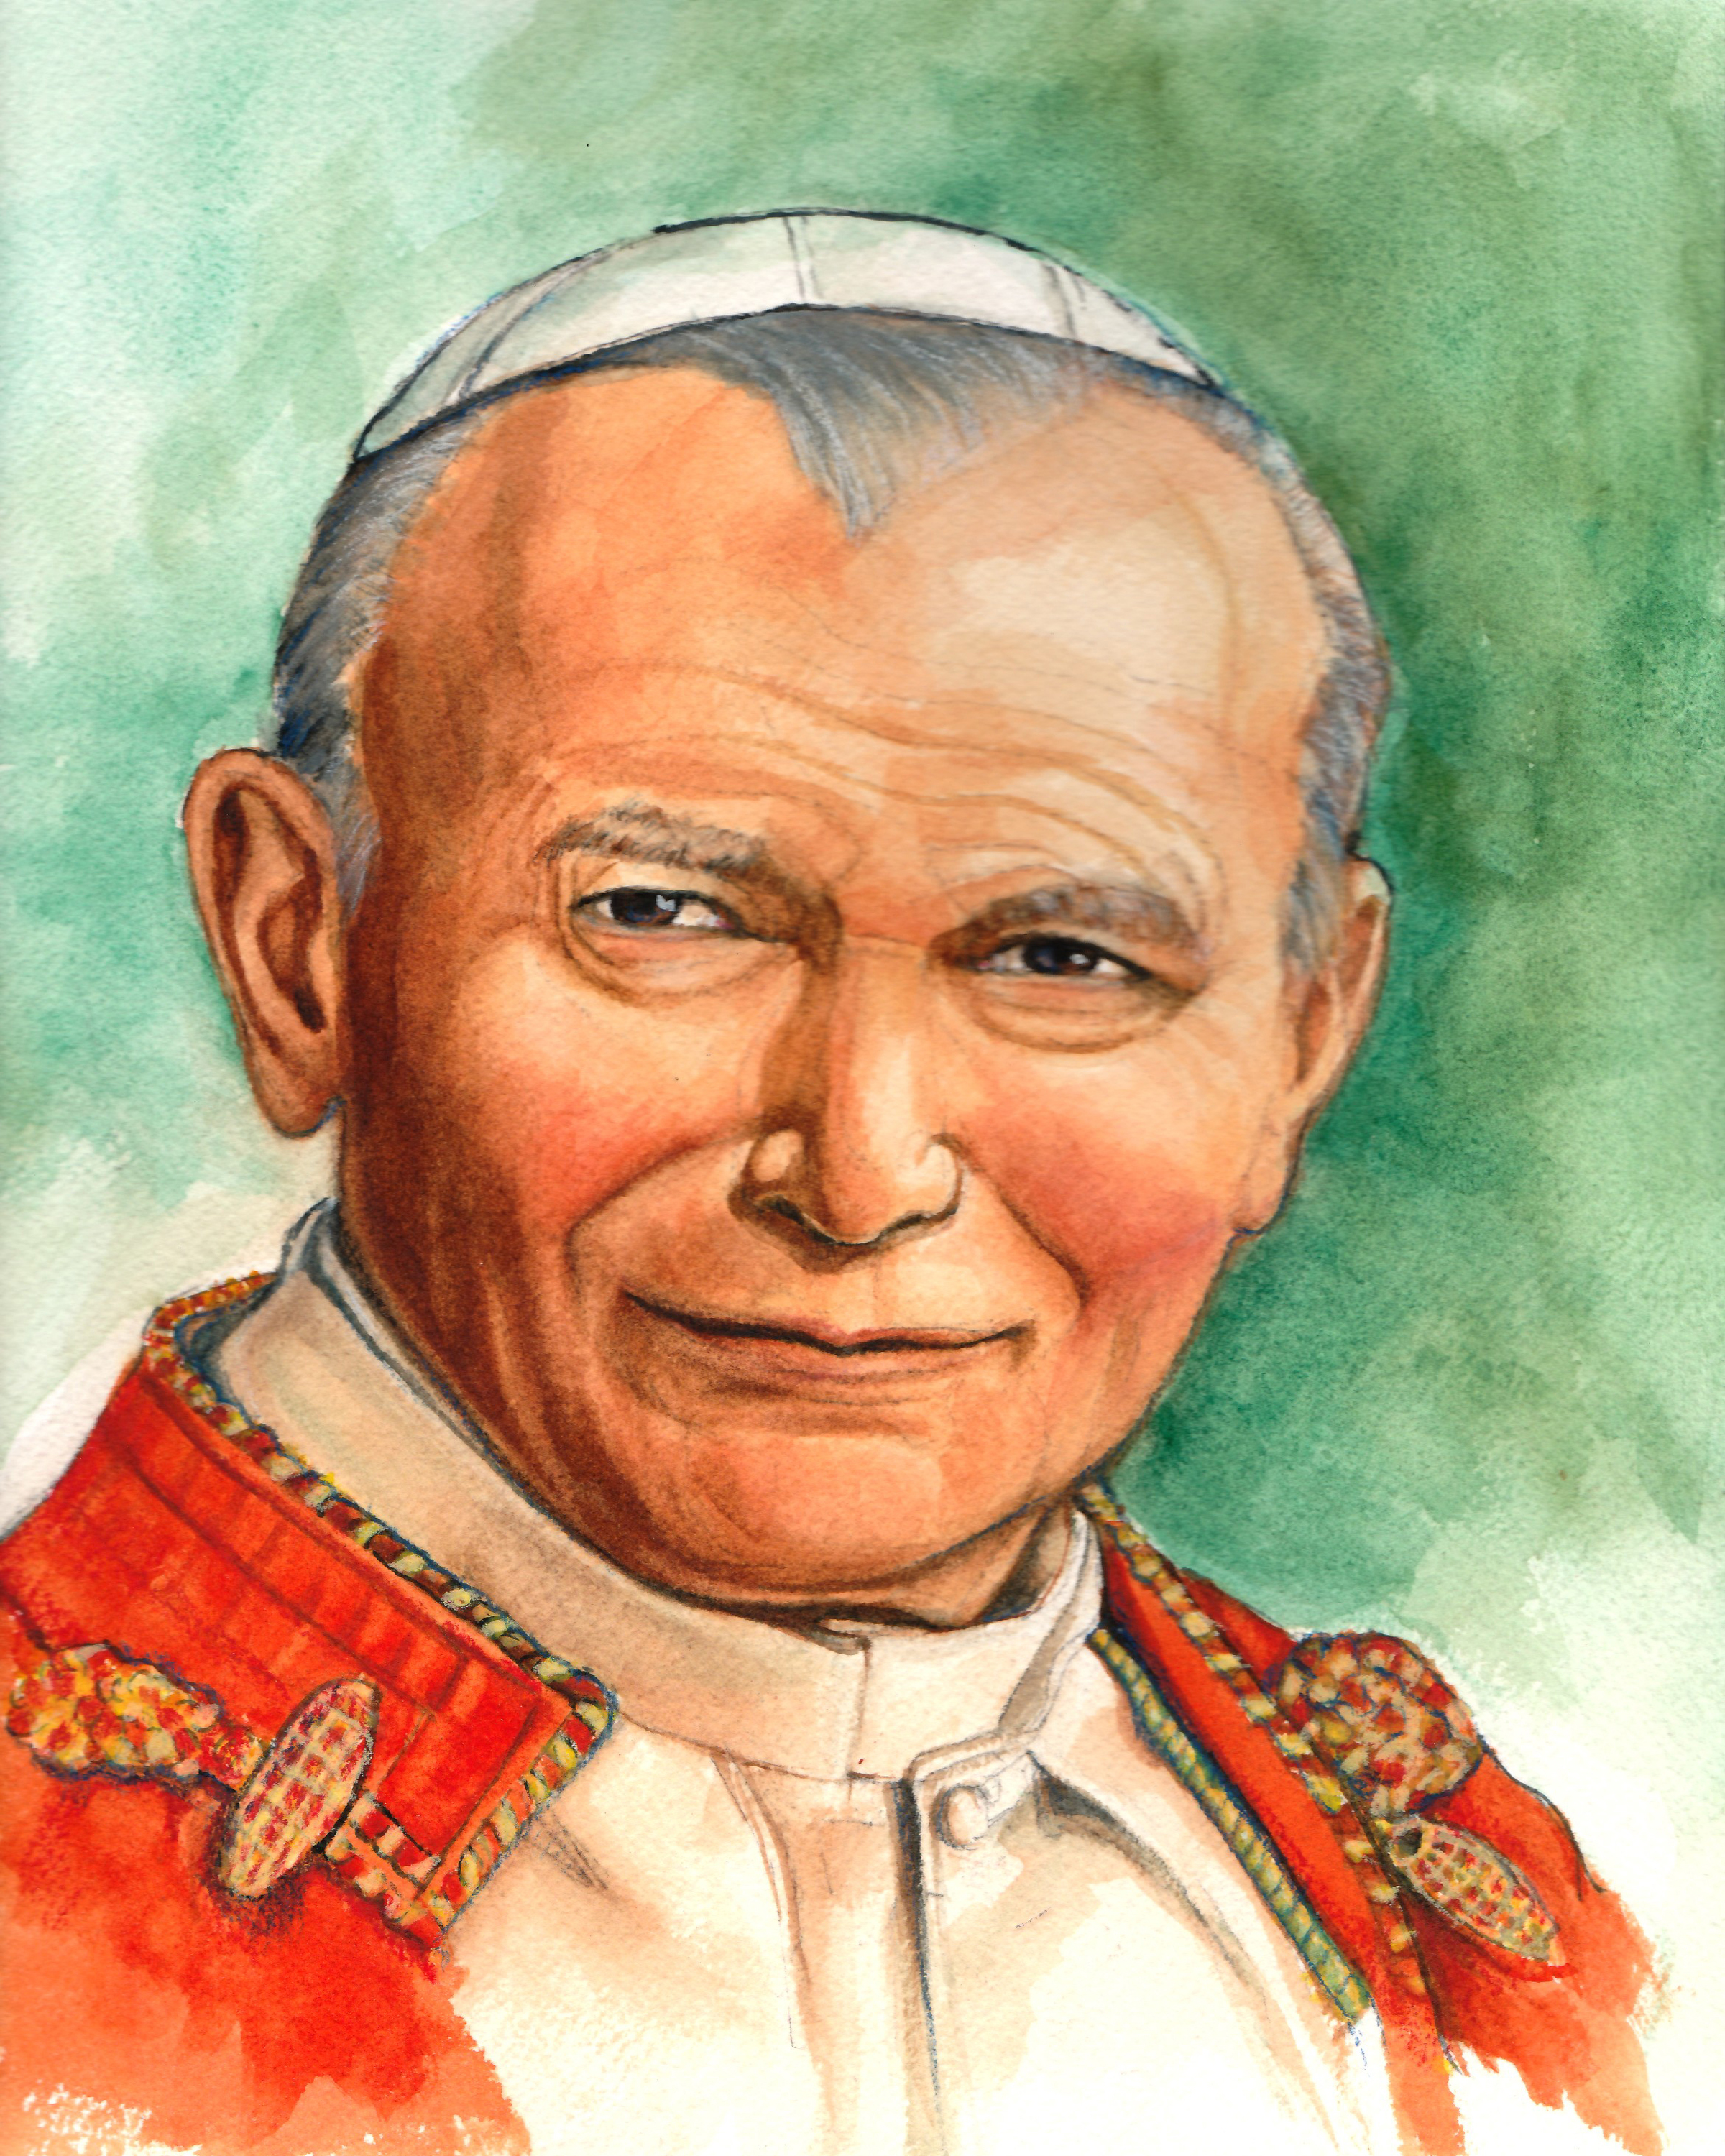 Saint John Paul II